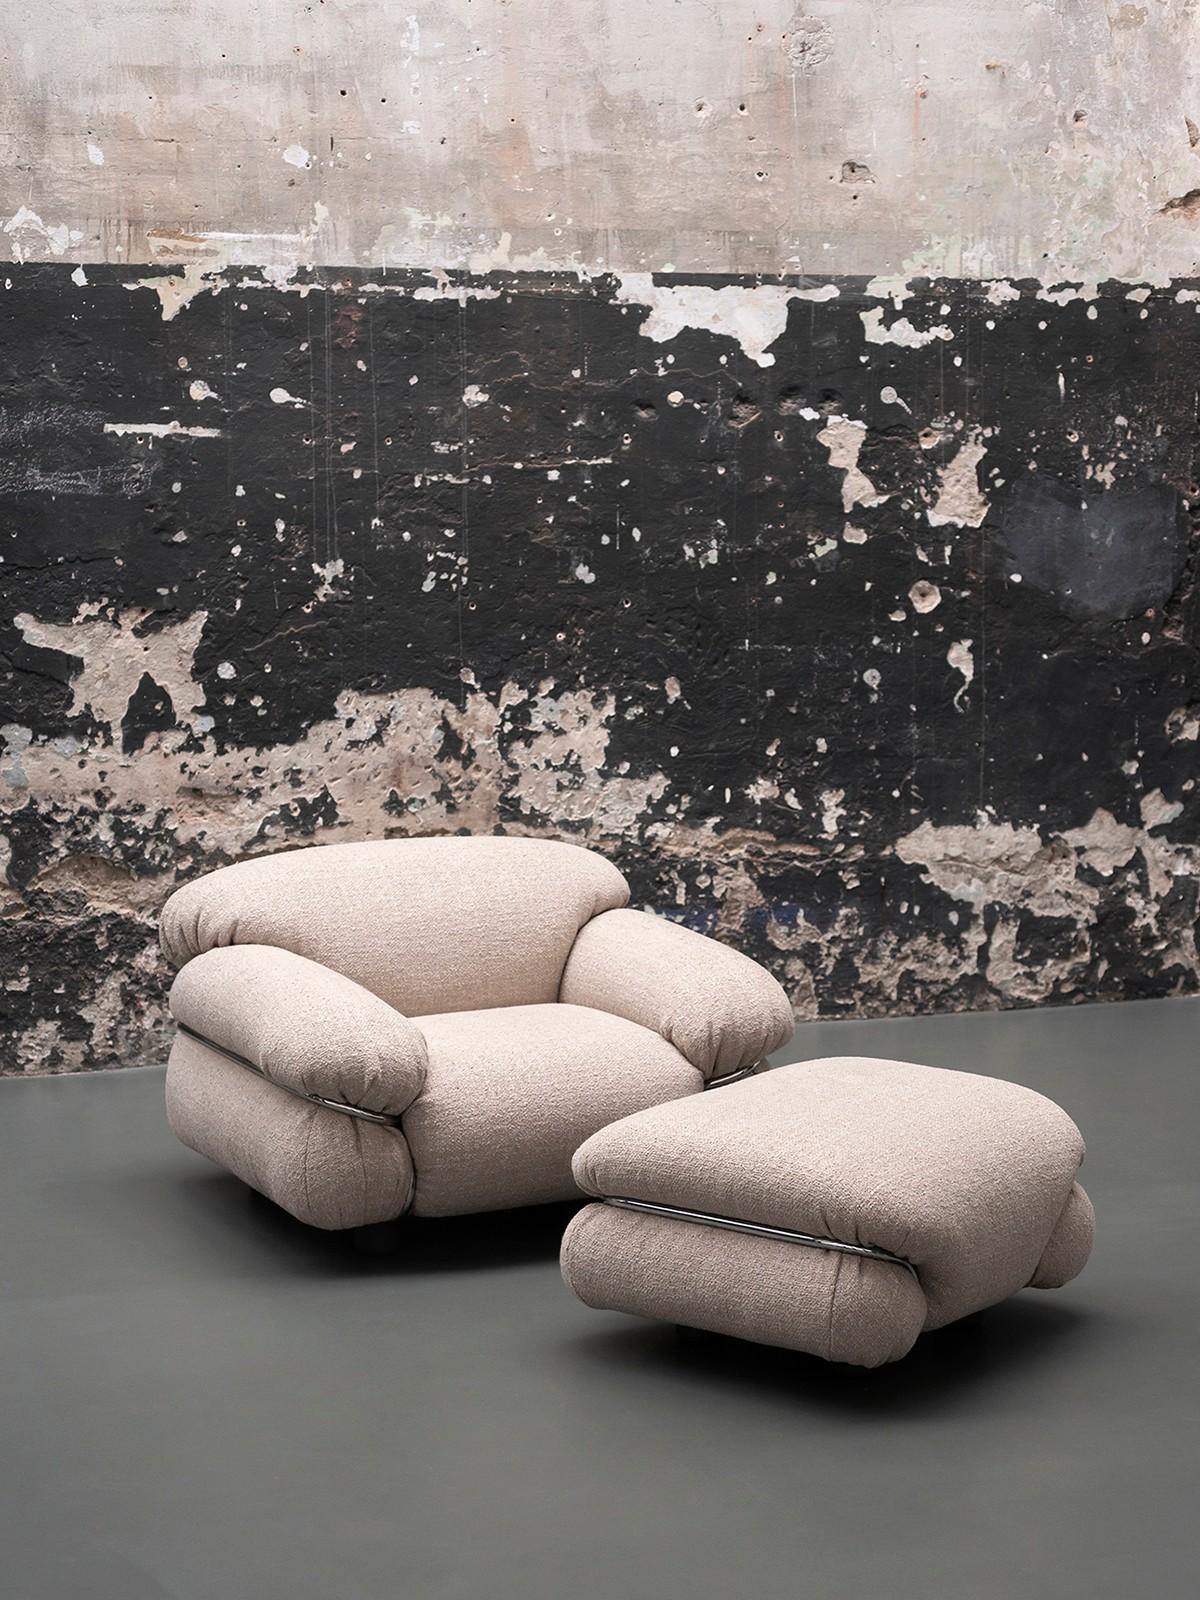 Zusammen mit dem Sessel und dem Sofa, die bereits in einer Neuauflage von Tacchini im Jahr 2015 vorgestellt wurden, setzt der Sesann Hocker die Geschichte einer Vision des zeitgenössischen Wohnens fort, die dazu einlädt, die Schönheit und die